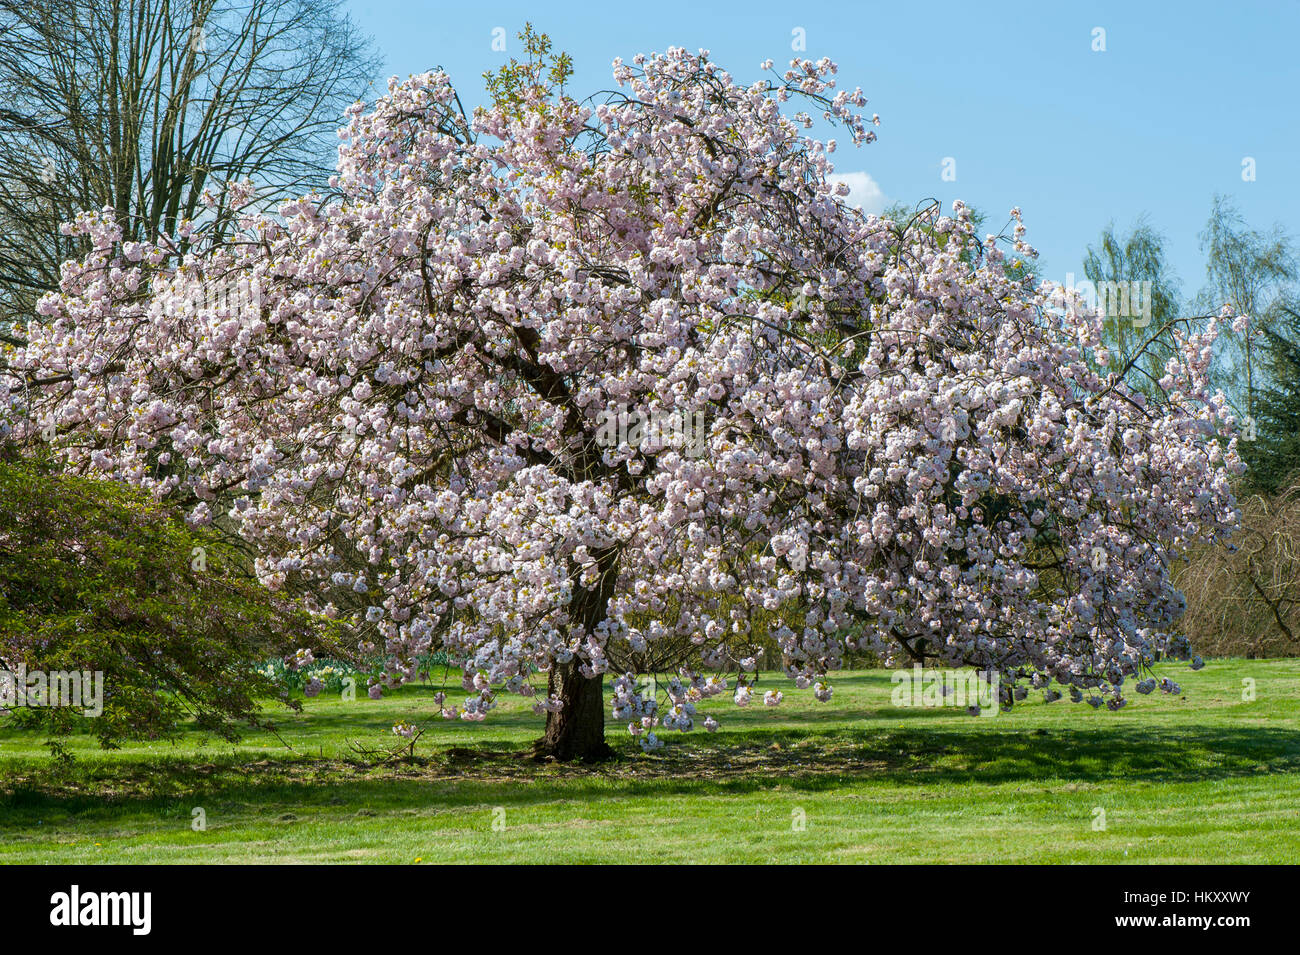 Prunus 'Matsumae-fuki' Japanese flowering cherry tree également connu sous le nom de Prunus 'Chocolate Ice', image prise contre un ciel bleu. Banque D'Images